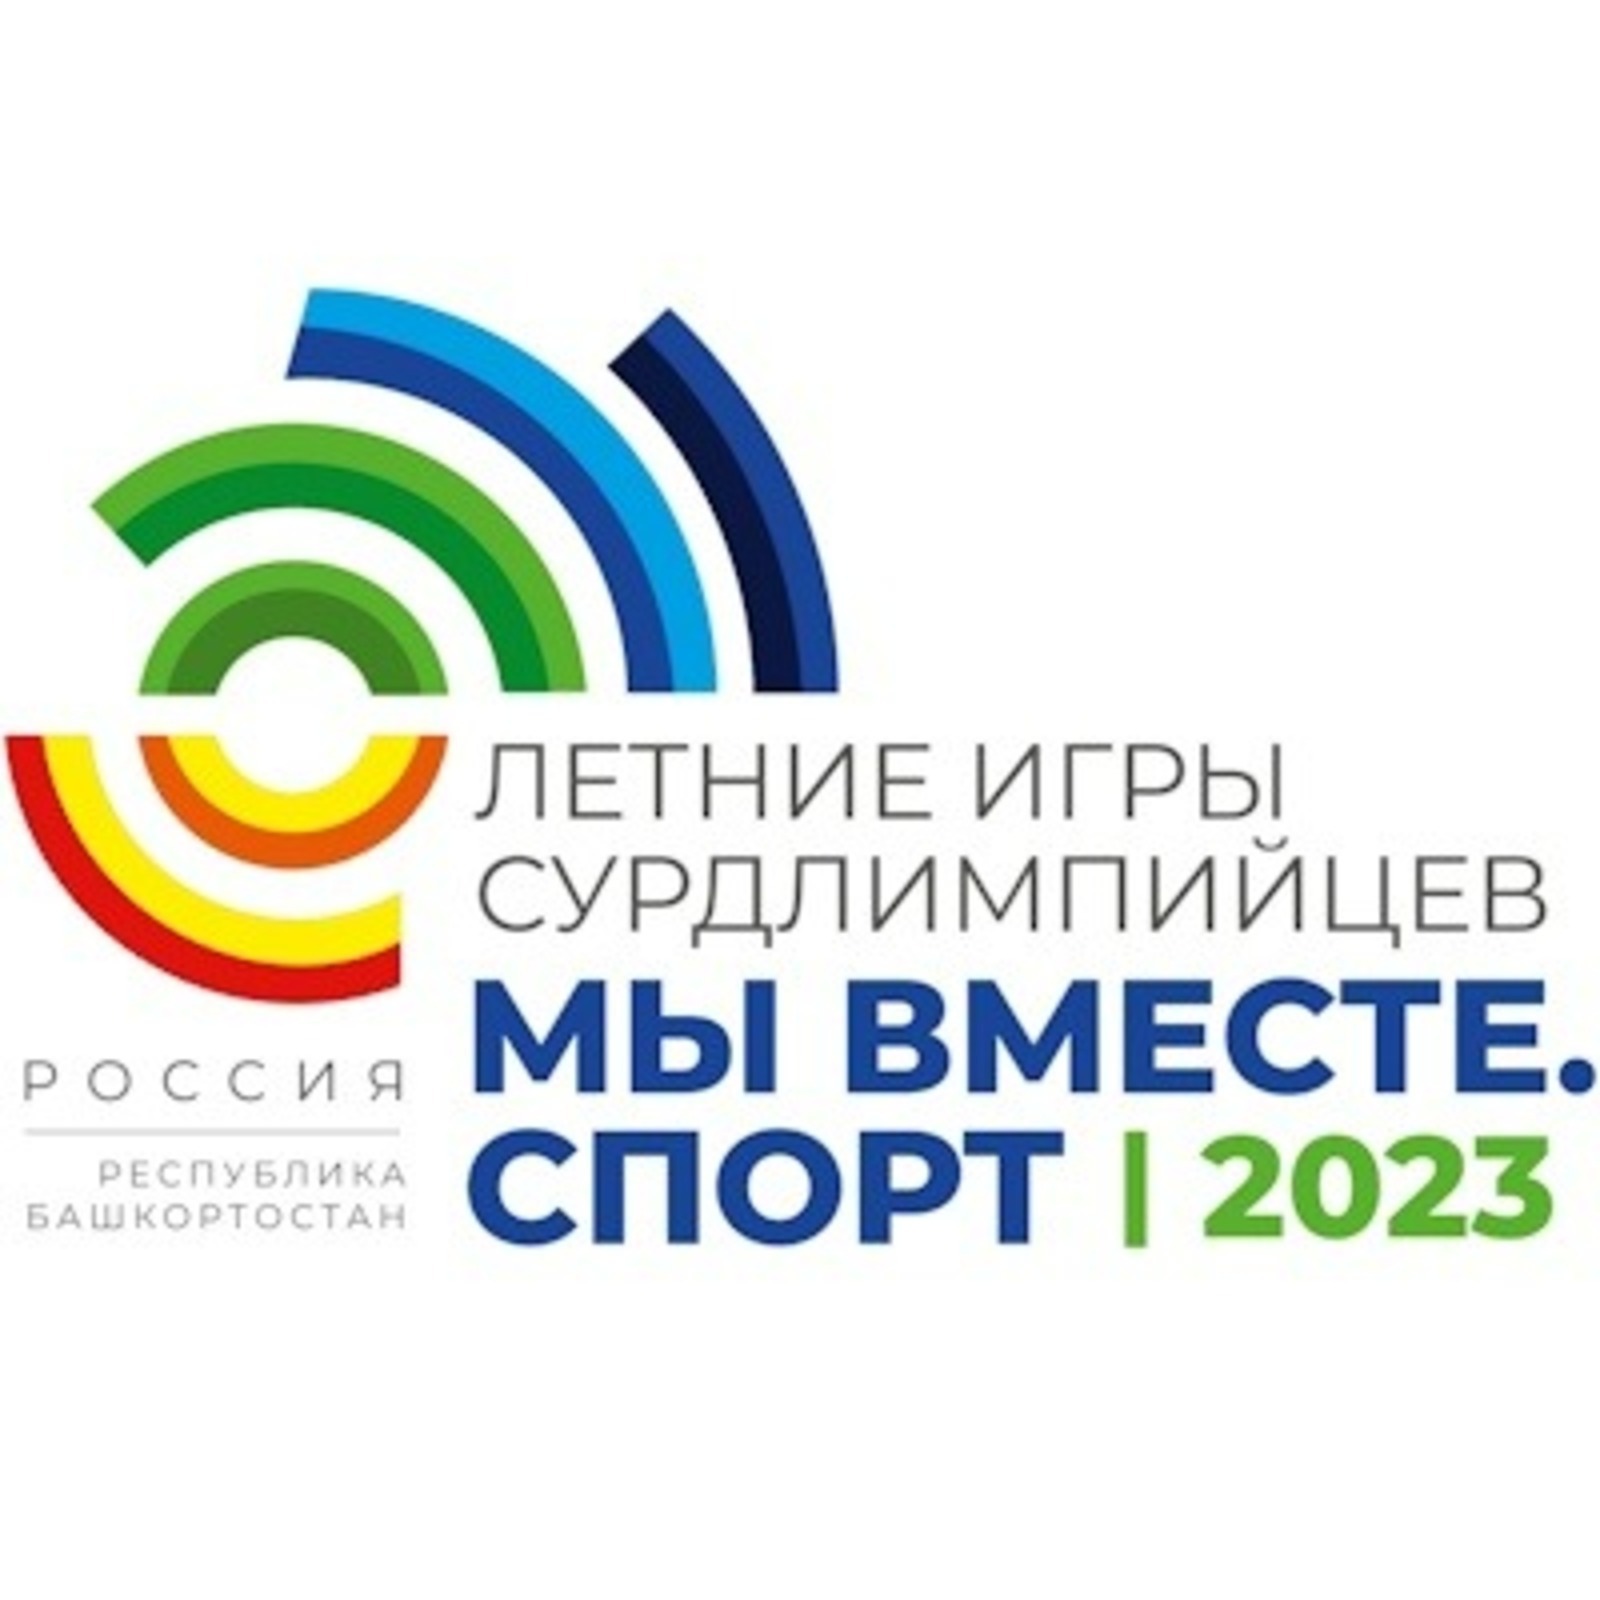 Башкортостан станет точкой притяжения для сурдлимпийцев из 30 стран мира!